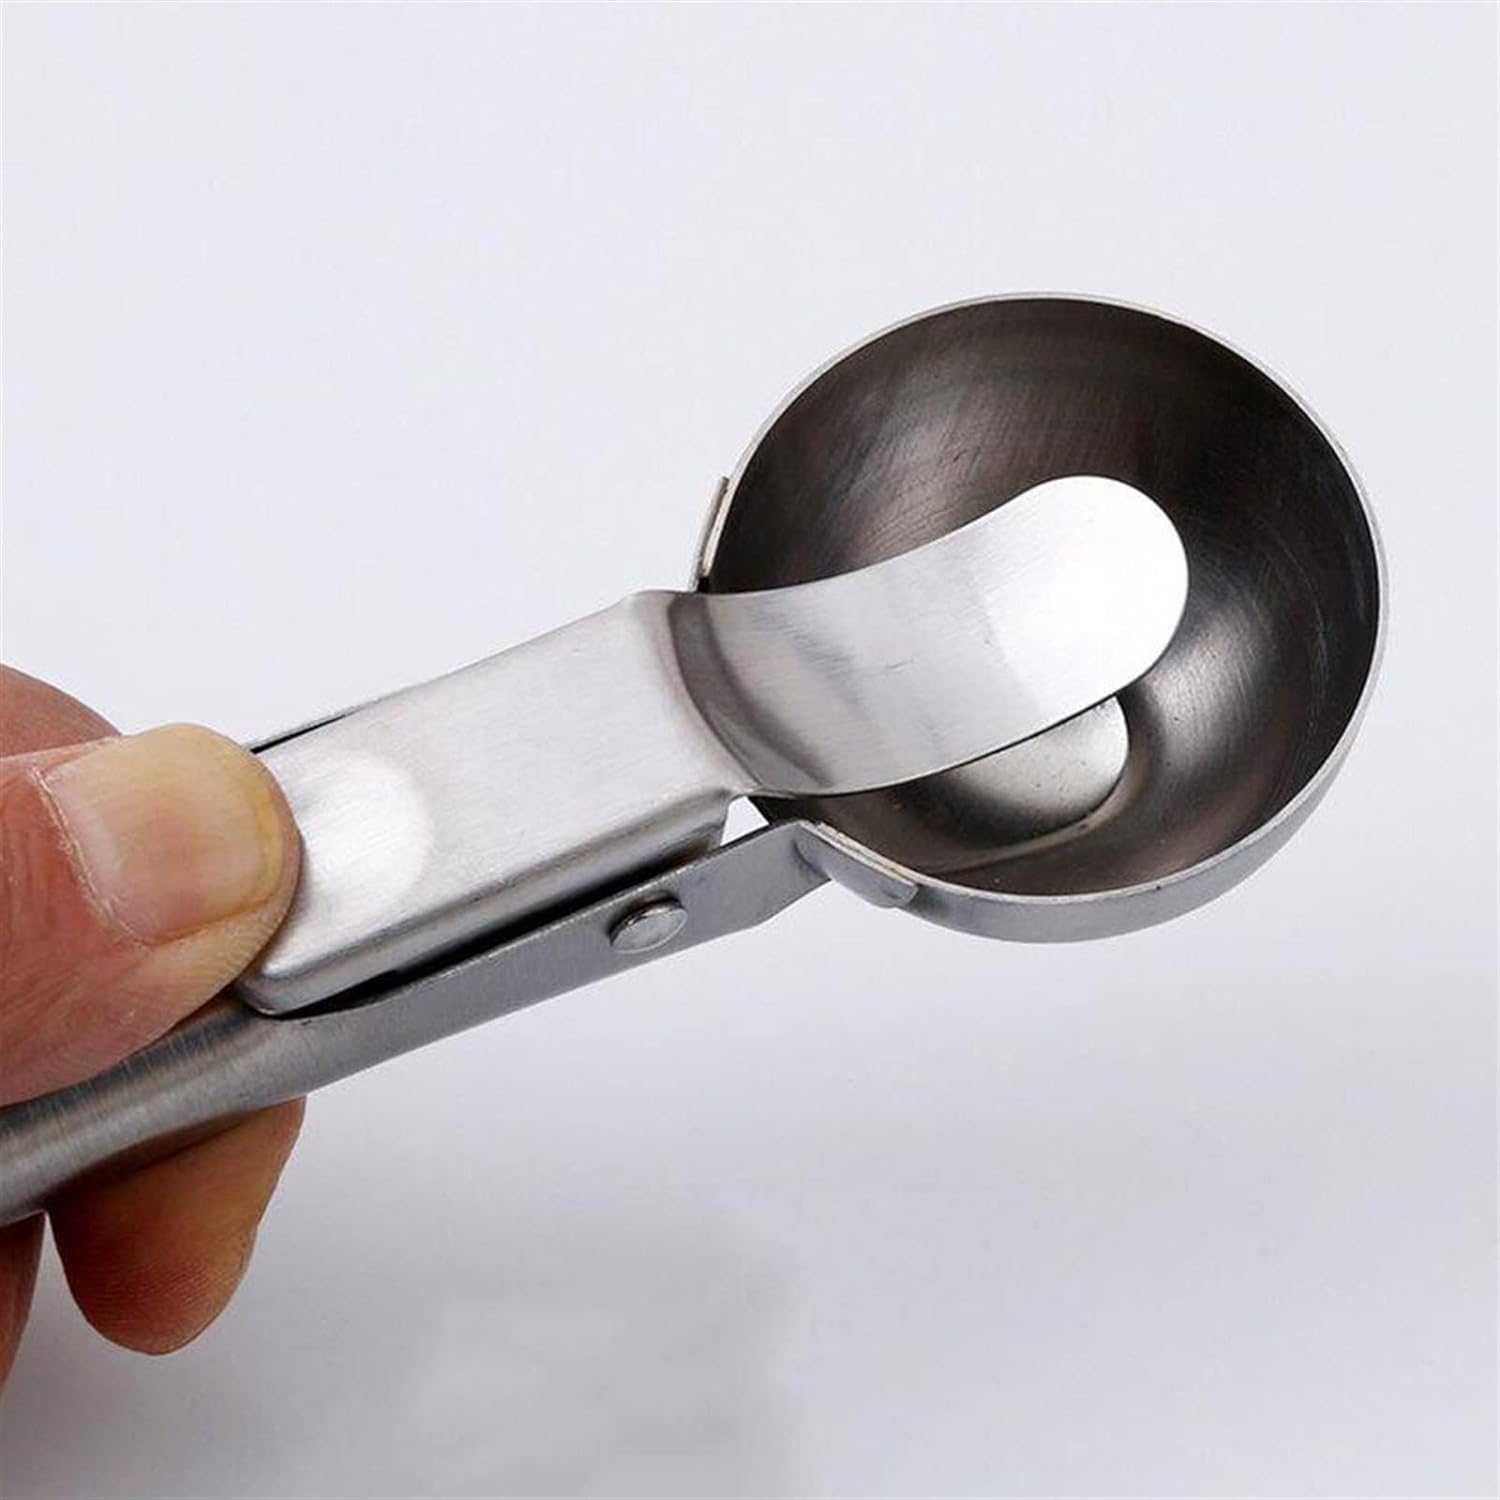 Ice Cream Scoop Stainless Steel Ice Cream Spoon